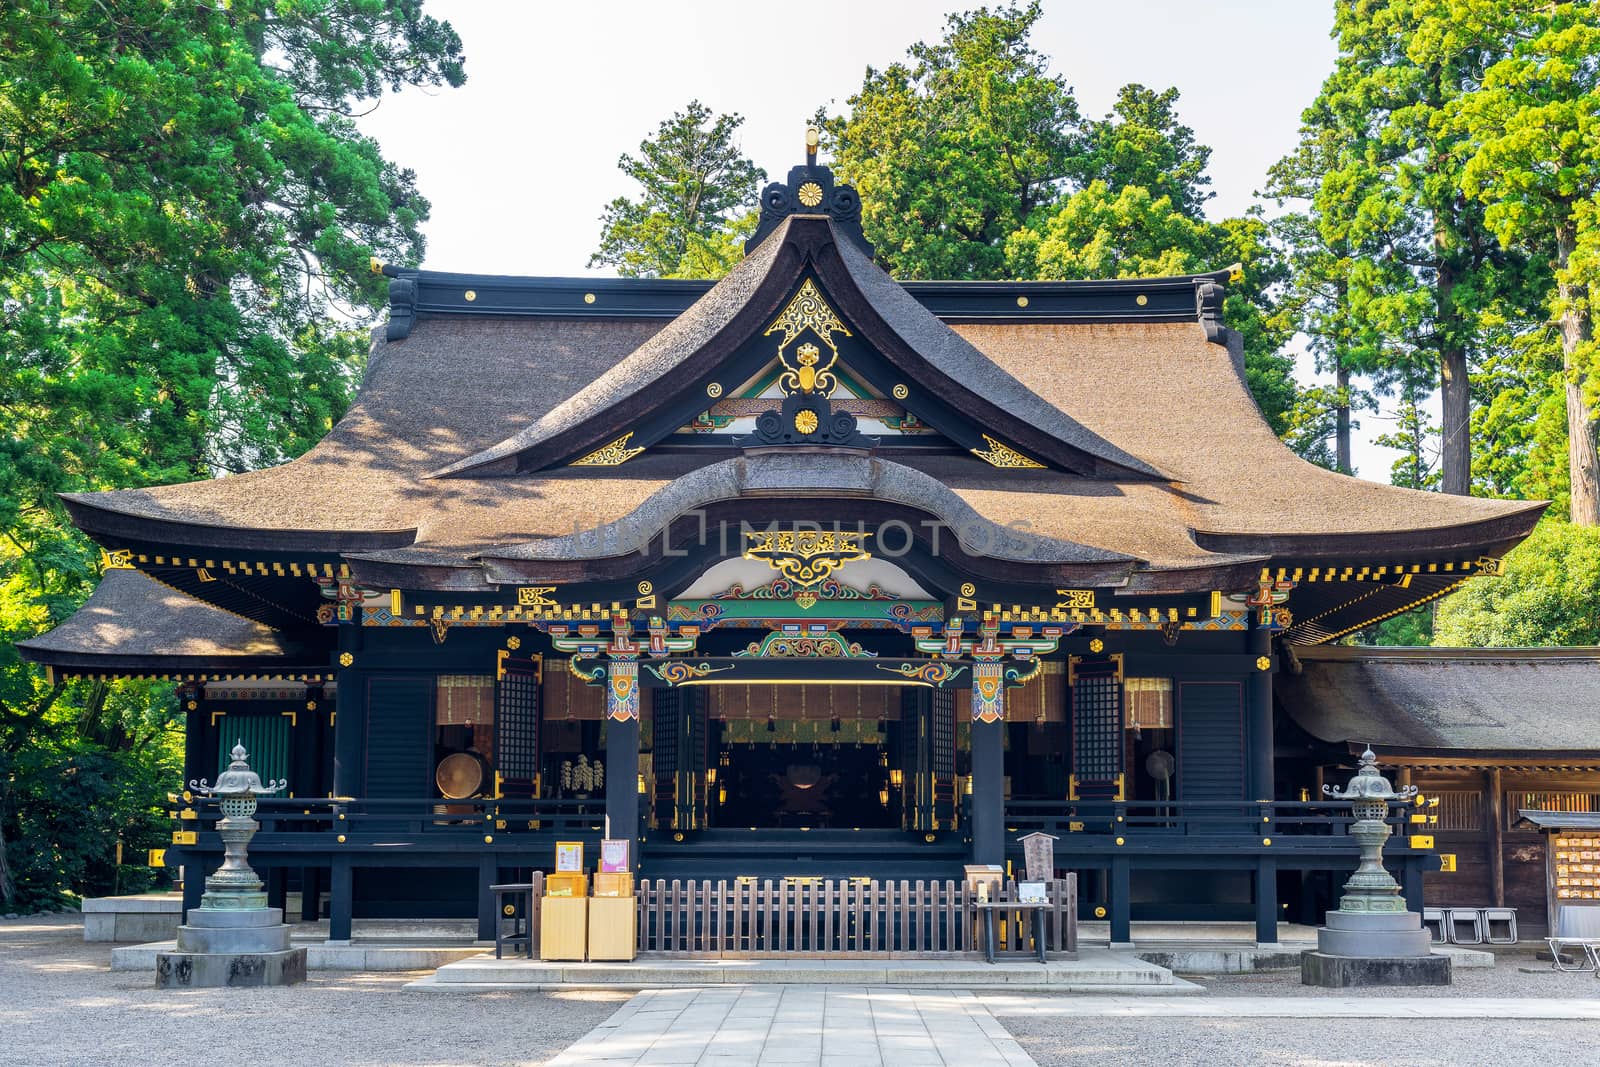 katori shrine in Chiba, Japan. by gutarphotoghaphy